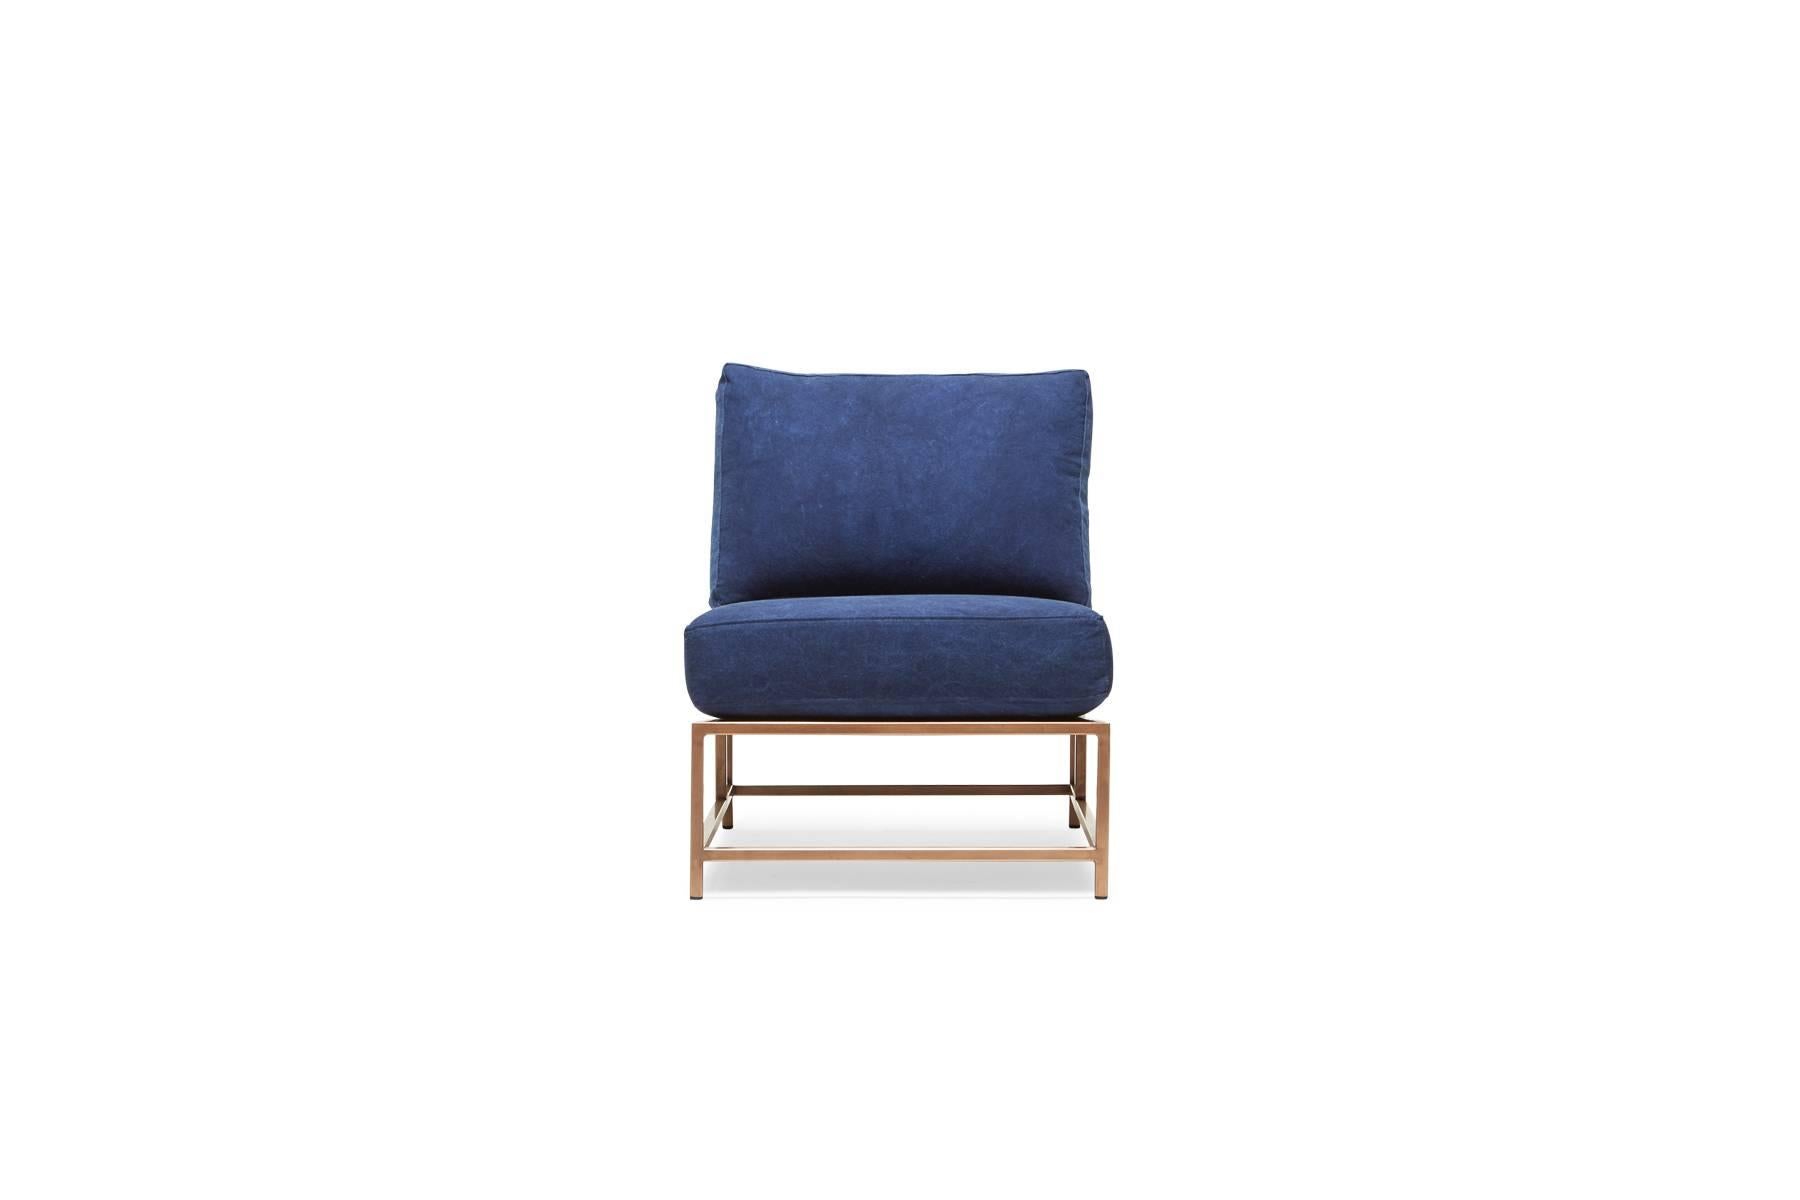 Élégante et raffinée, la chaise Inheritance s'intègre parfaitement dans presque tous les espaces. 

Inspirée d'un jean usé et créée en collaboration avec l'équipe de Simon Miller, aux États-Unis, notre toile de coton indigo est teinte à la main